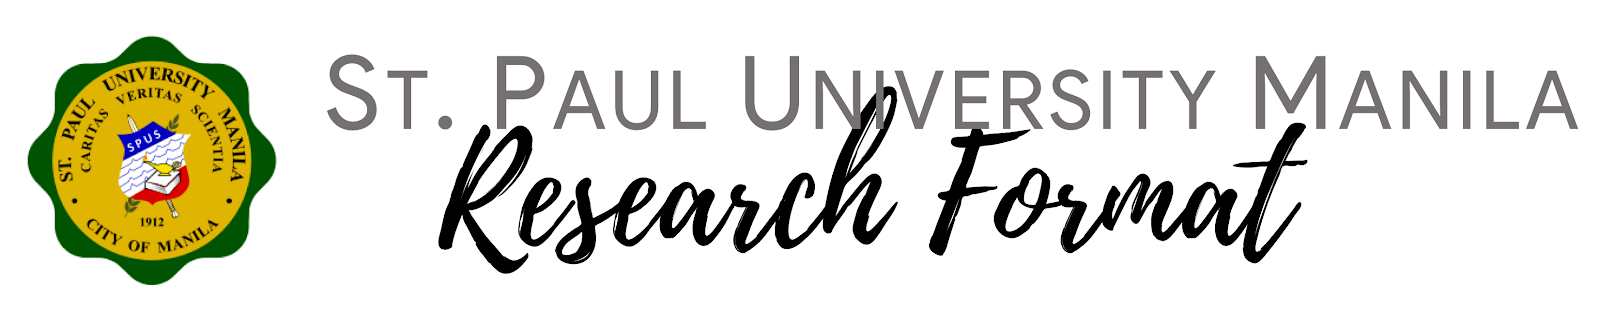 SPU Manila Research Format